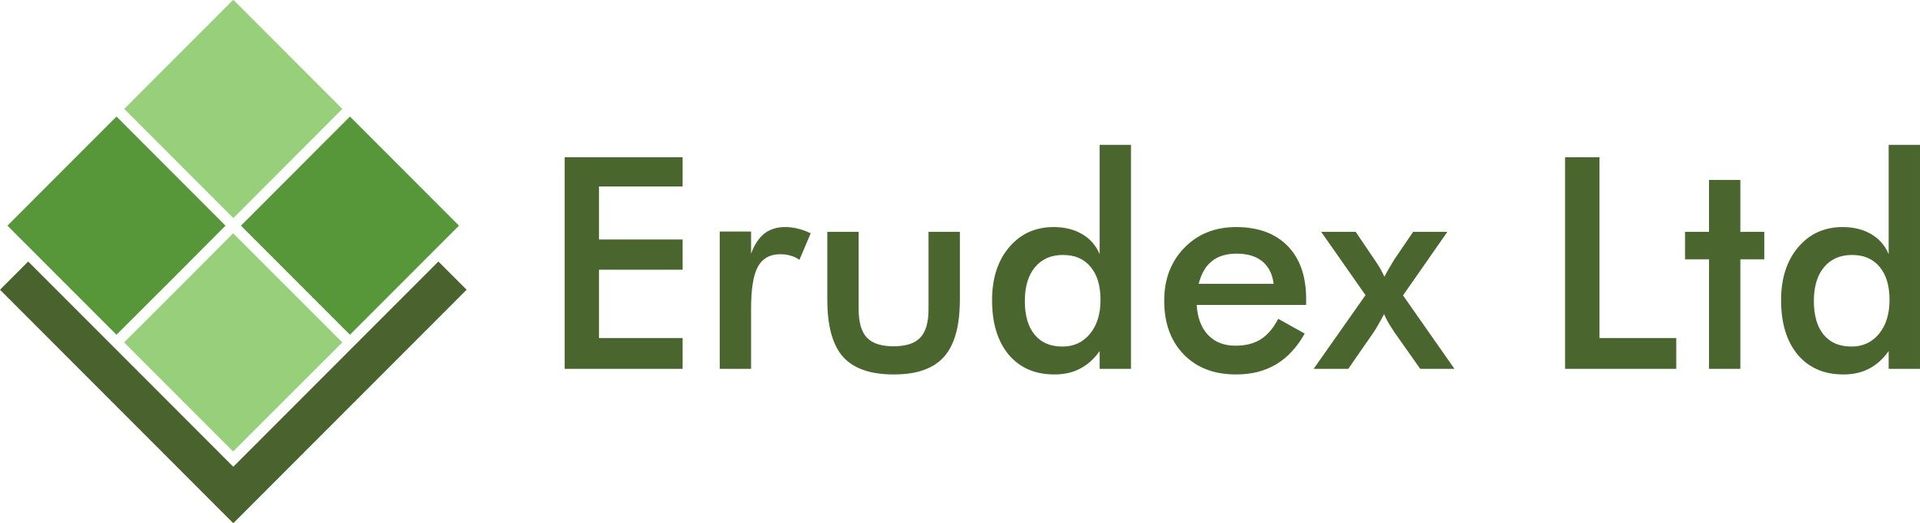 Erudex Ltd